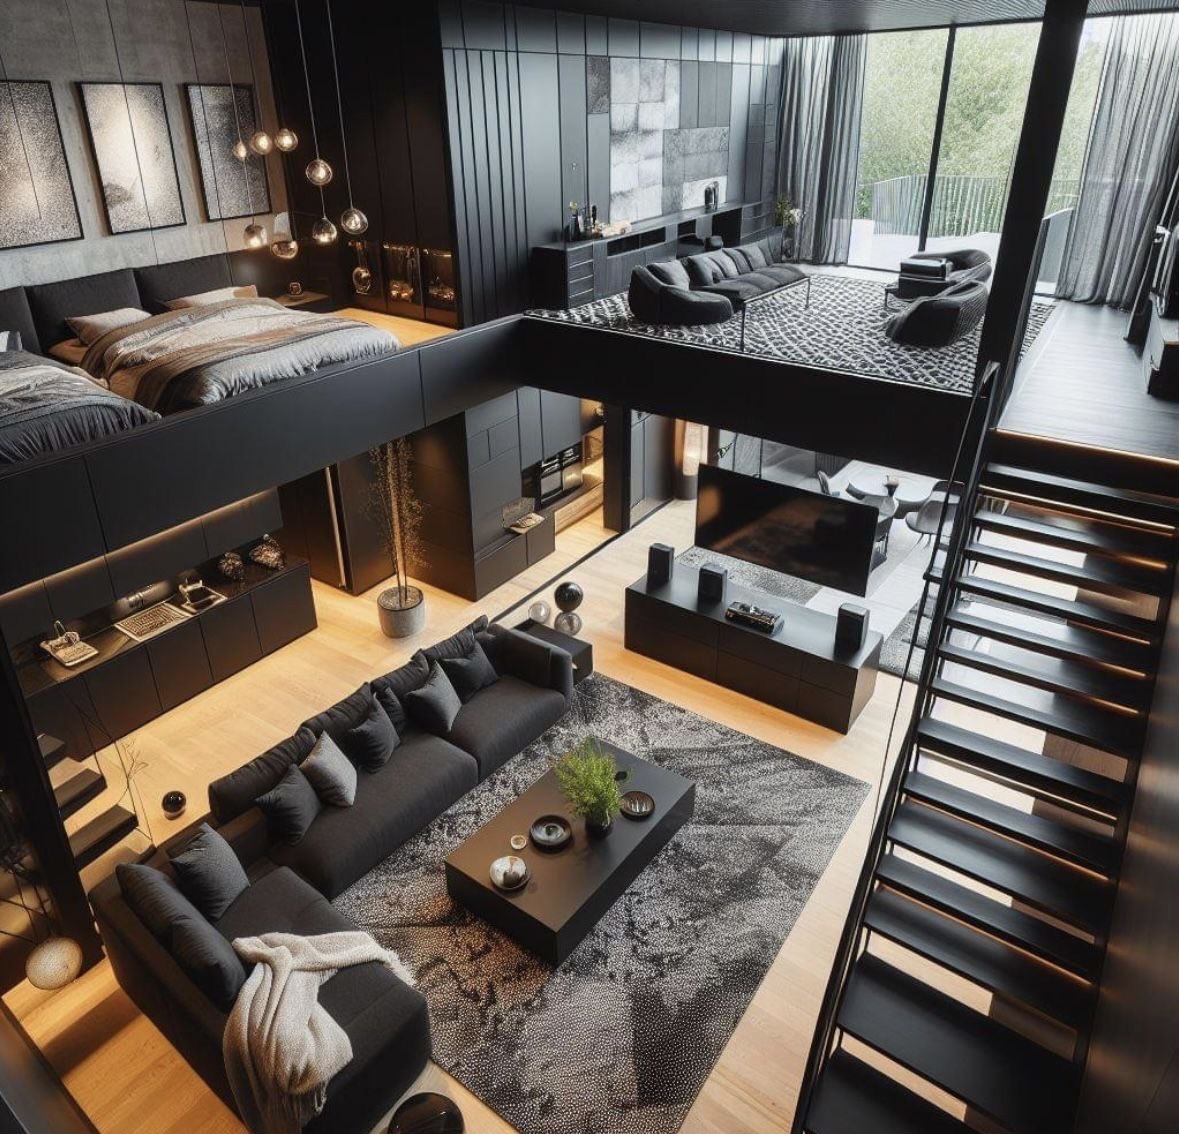 Dream loft apartment.